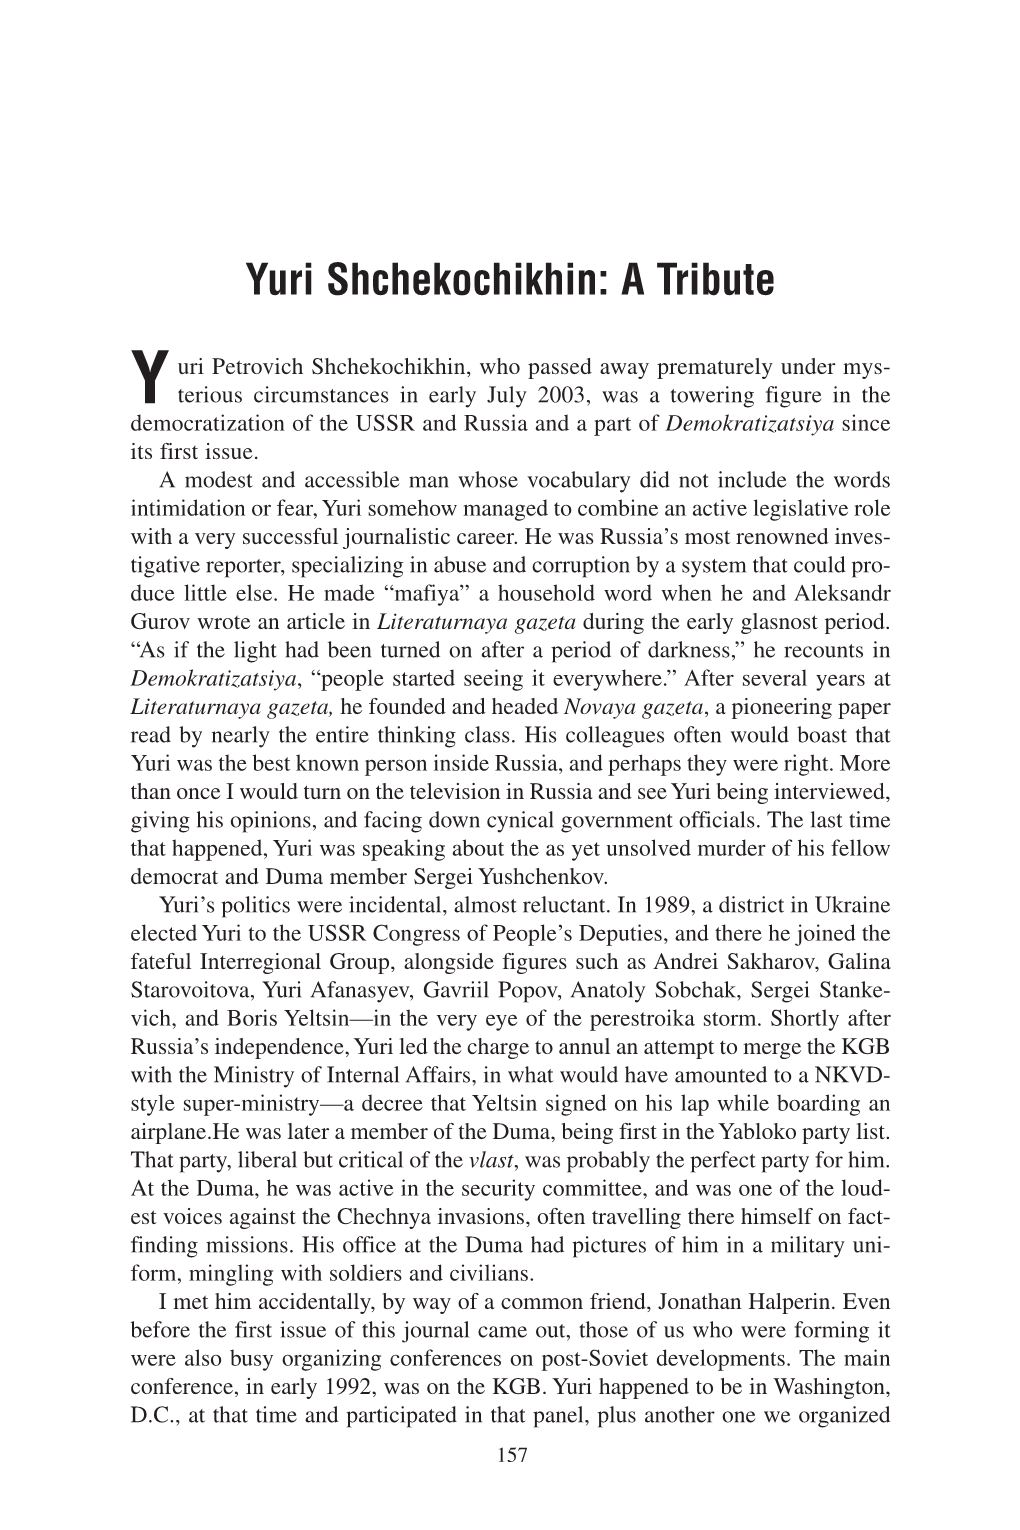 Yuri Shchekochikhin: a Tribute